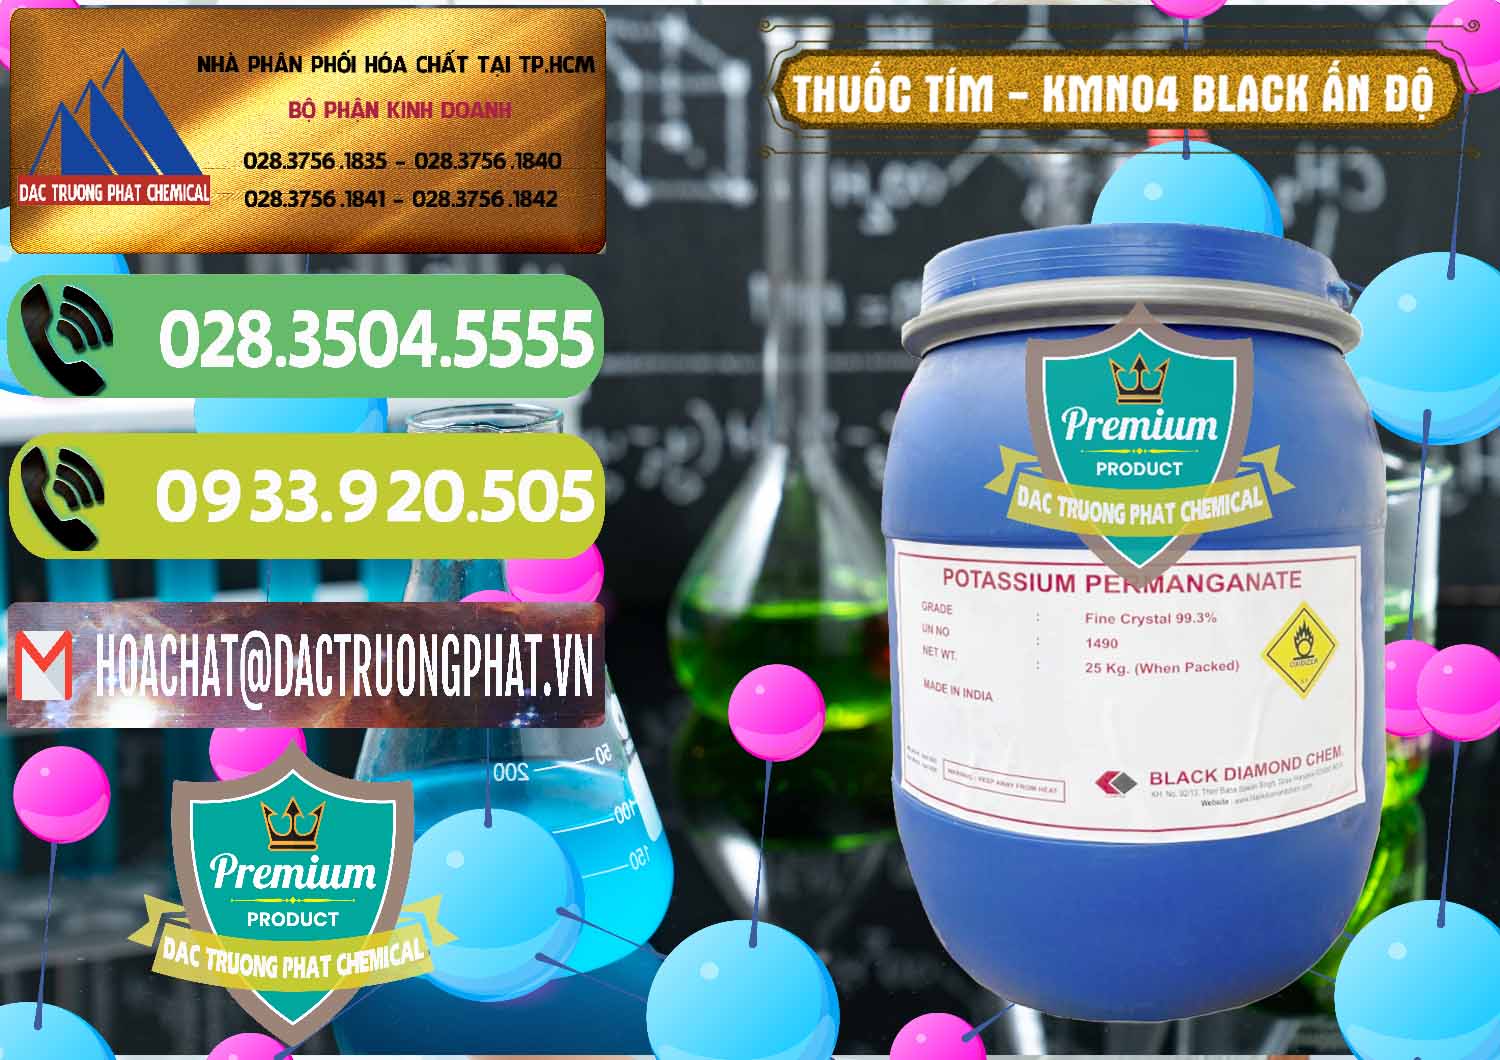 Nơi chuyên bán _ phân phối Thuốc Tím - KMNO4 Black Diamond Ấn Độ India - 0414 - Đơn vị nhập khẩu và phân phối hóa chất tại TP.HCM - hoachatmientay.vn